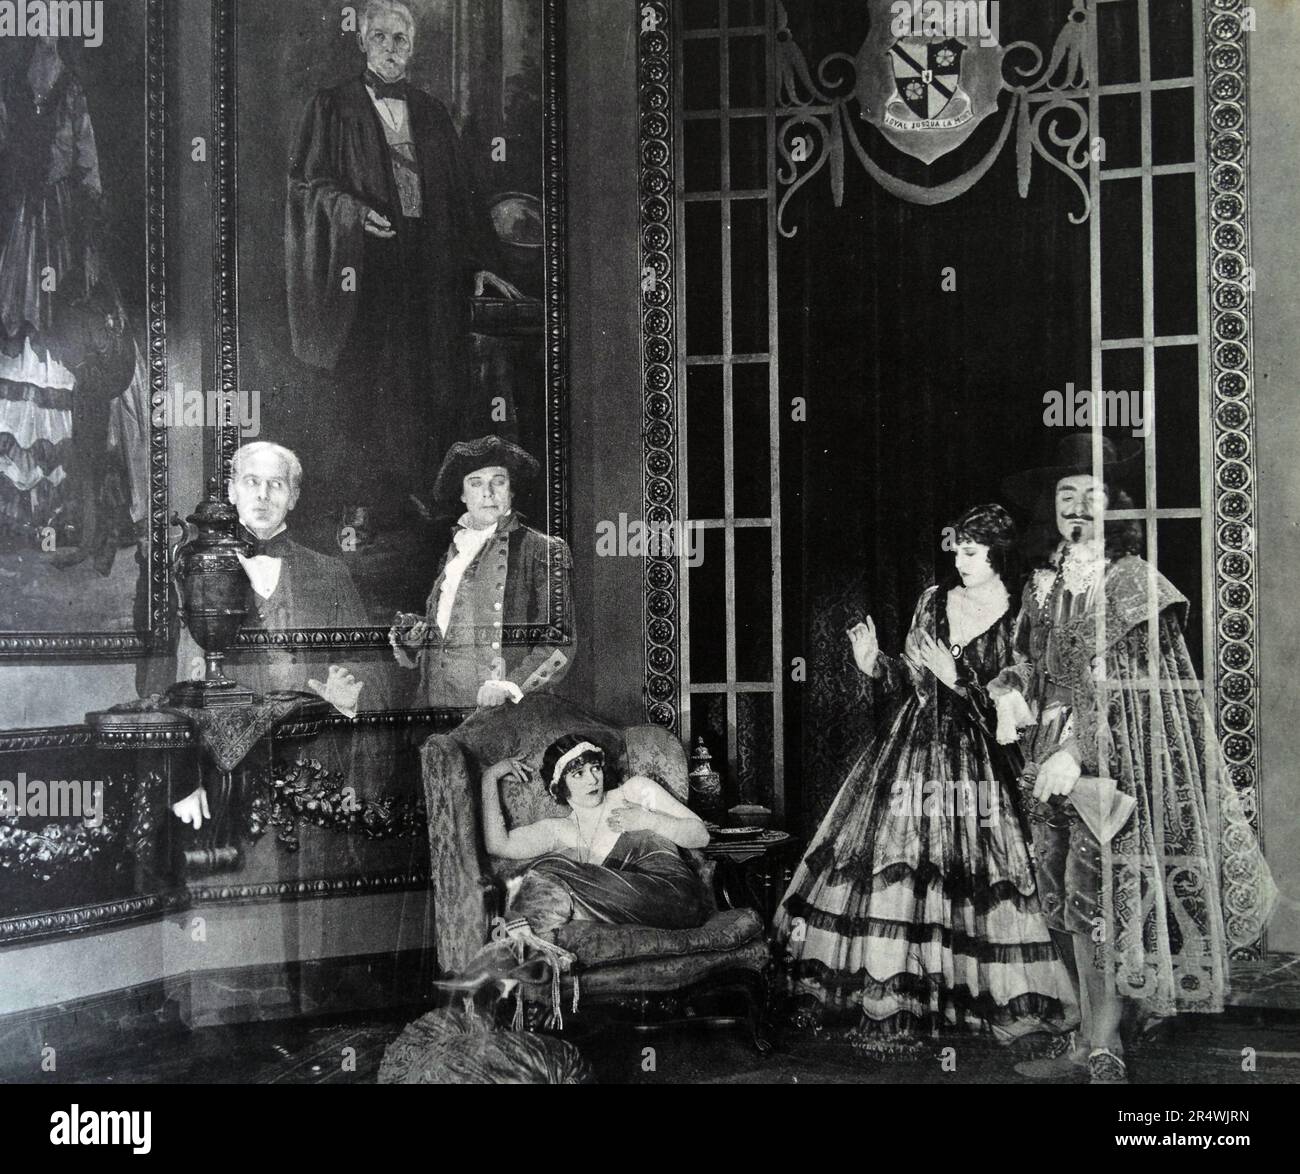 Aristokratischen Vorfahren ihres Mannes schauen sneeringly am demütig geboren Heldin in diesem 'Vision' von Samstag Nacht, 1922. Stockfoto